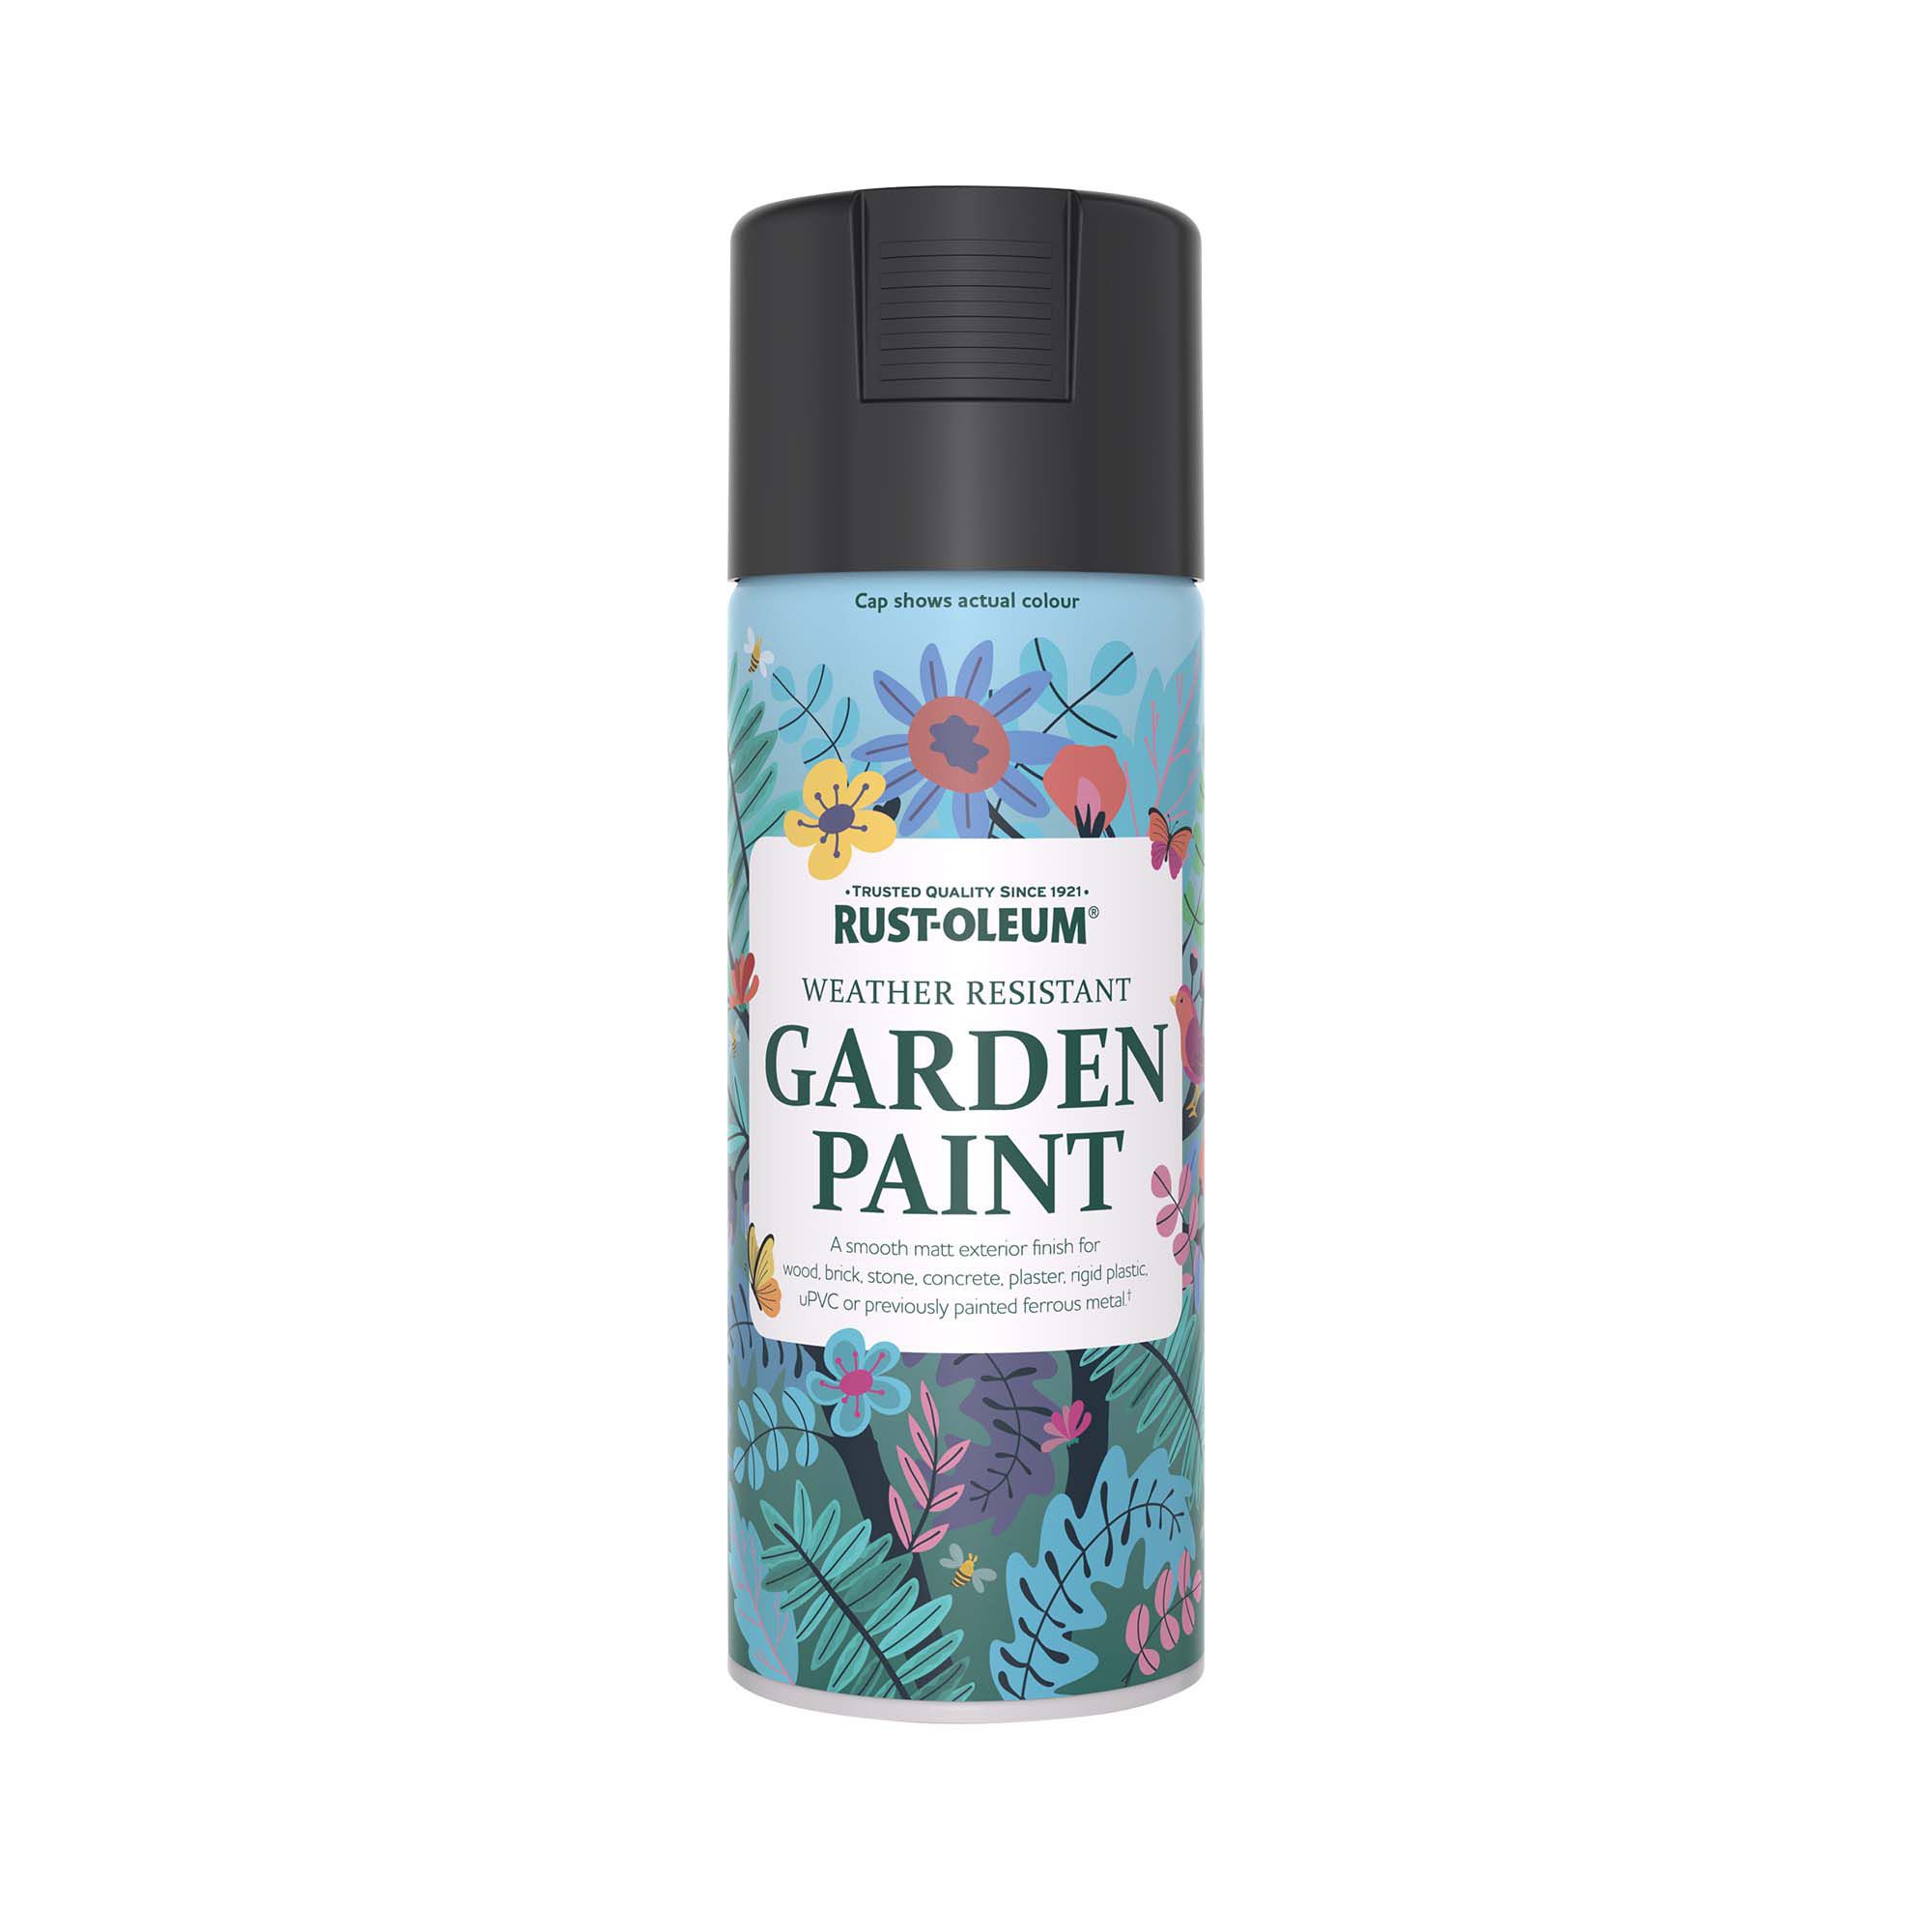 Rust-Oleum Garden Paint Natural Charcoal Matt Multi-surface Garden Paint, 400ml Spray can